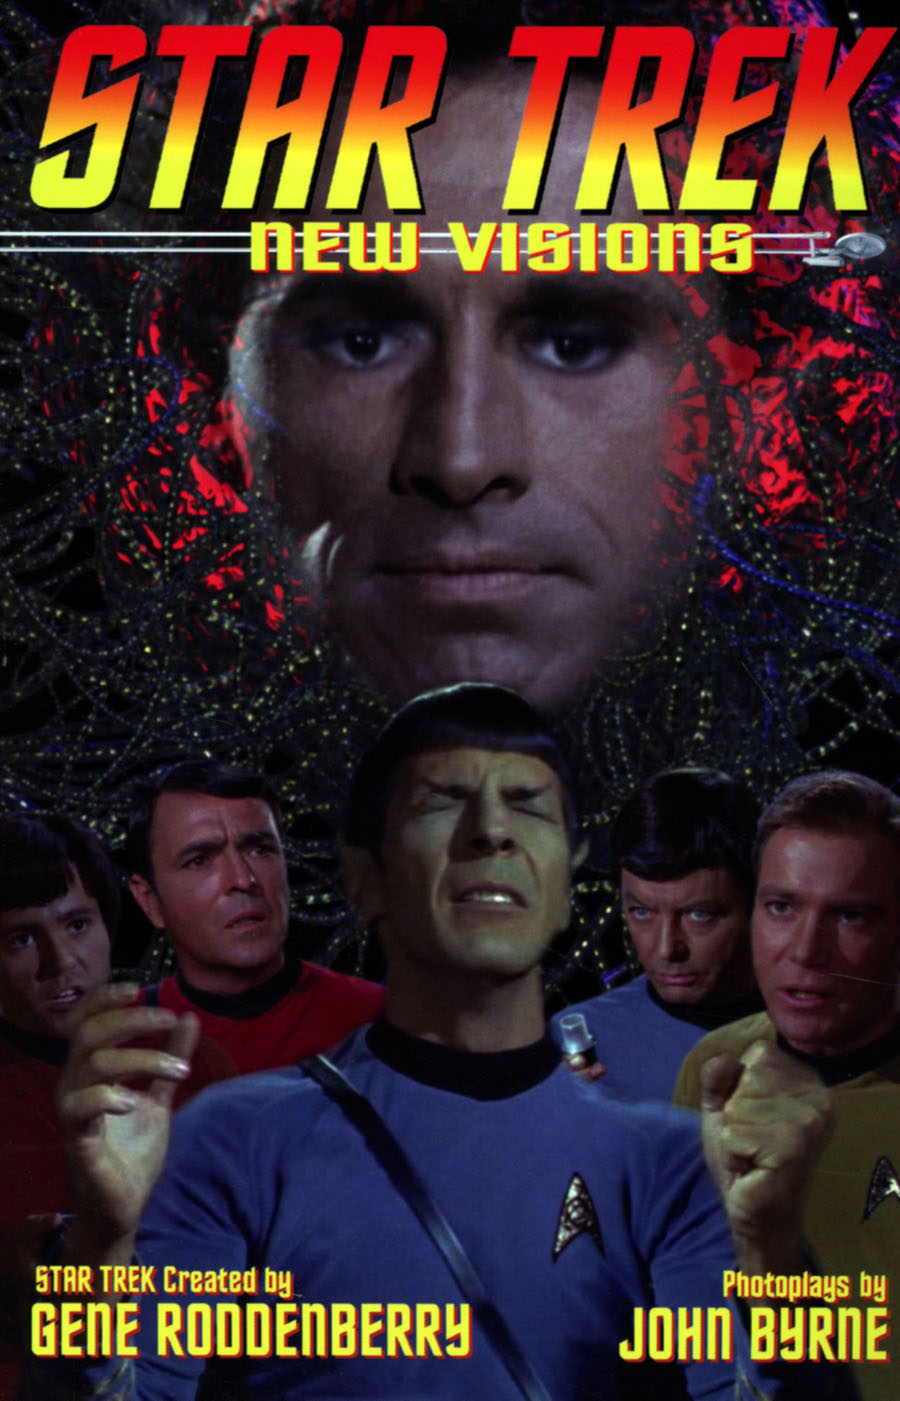 Star Trek New Visions Vol 4 TP